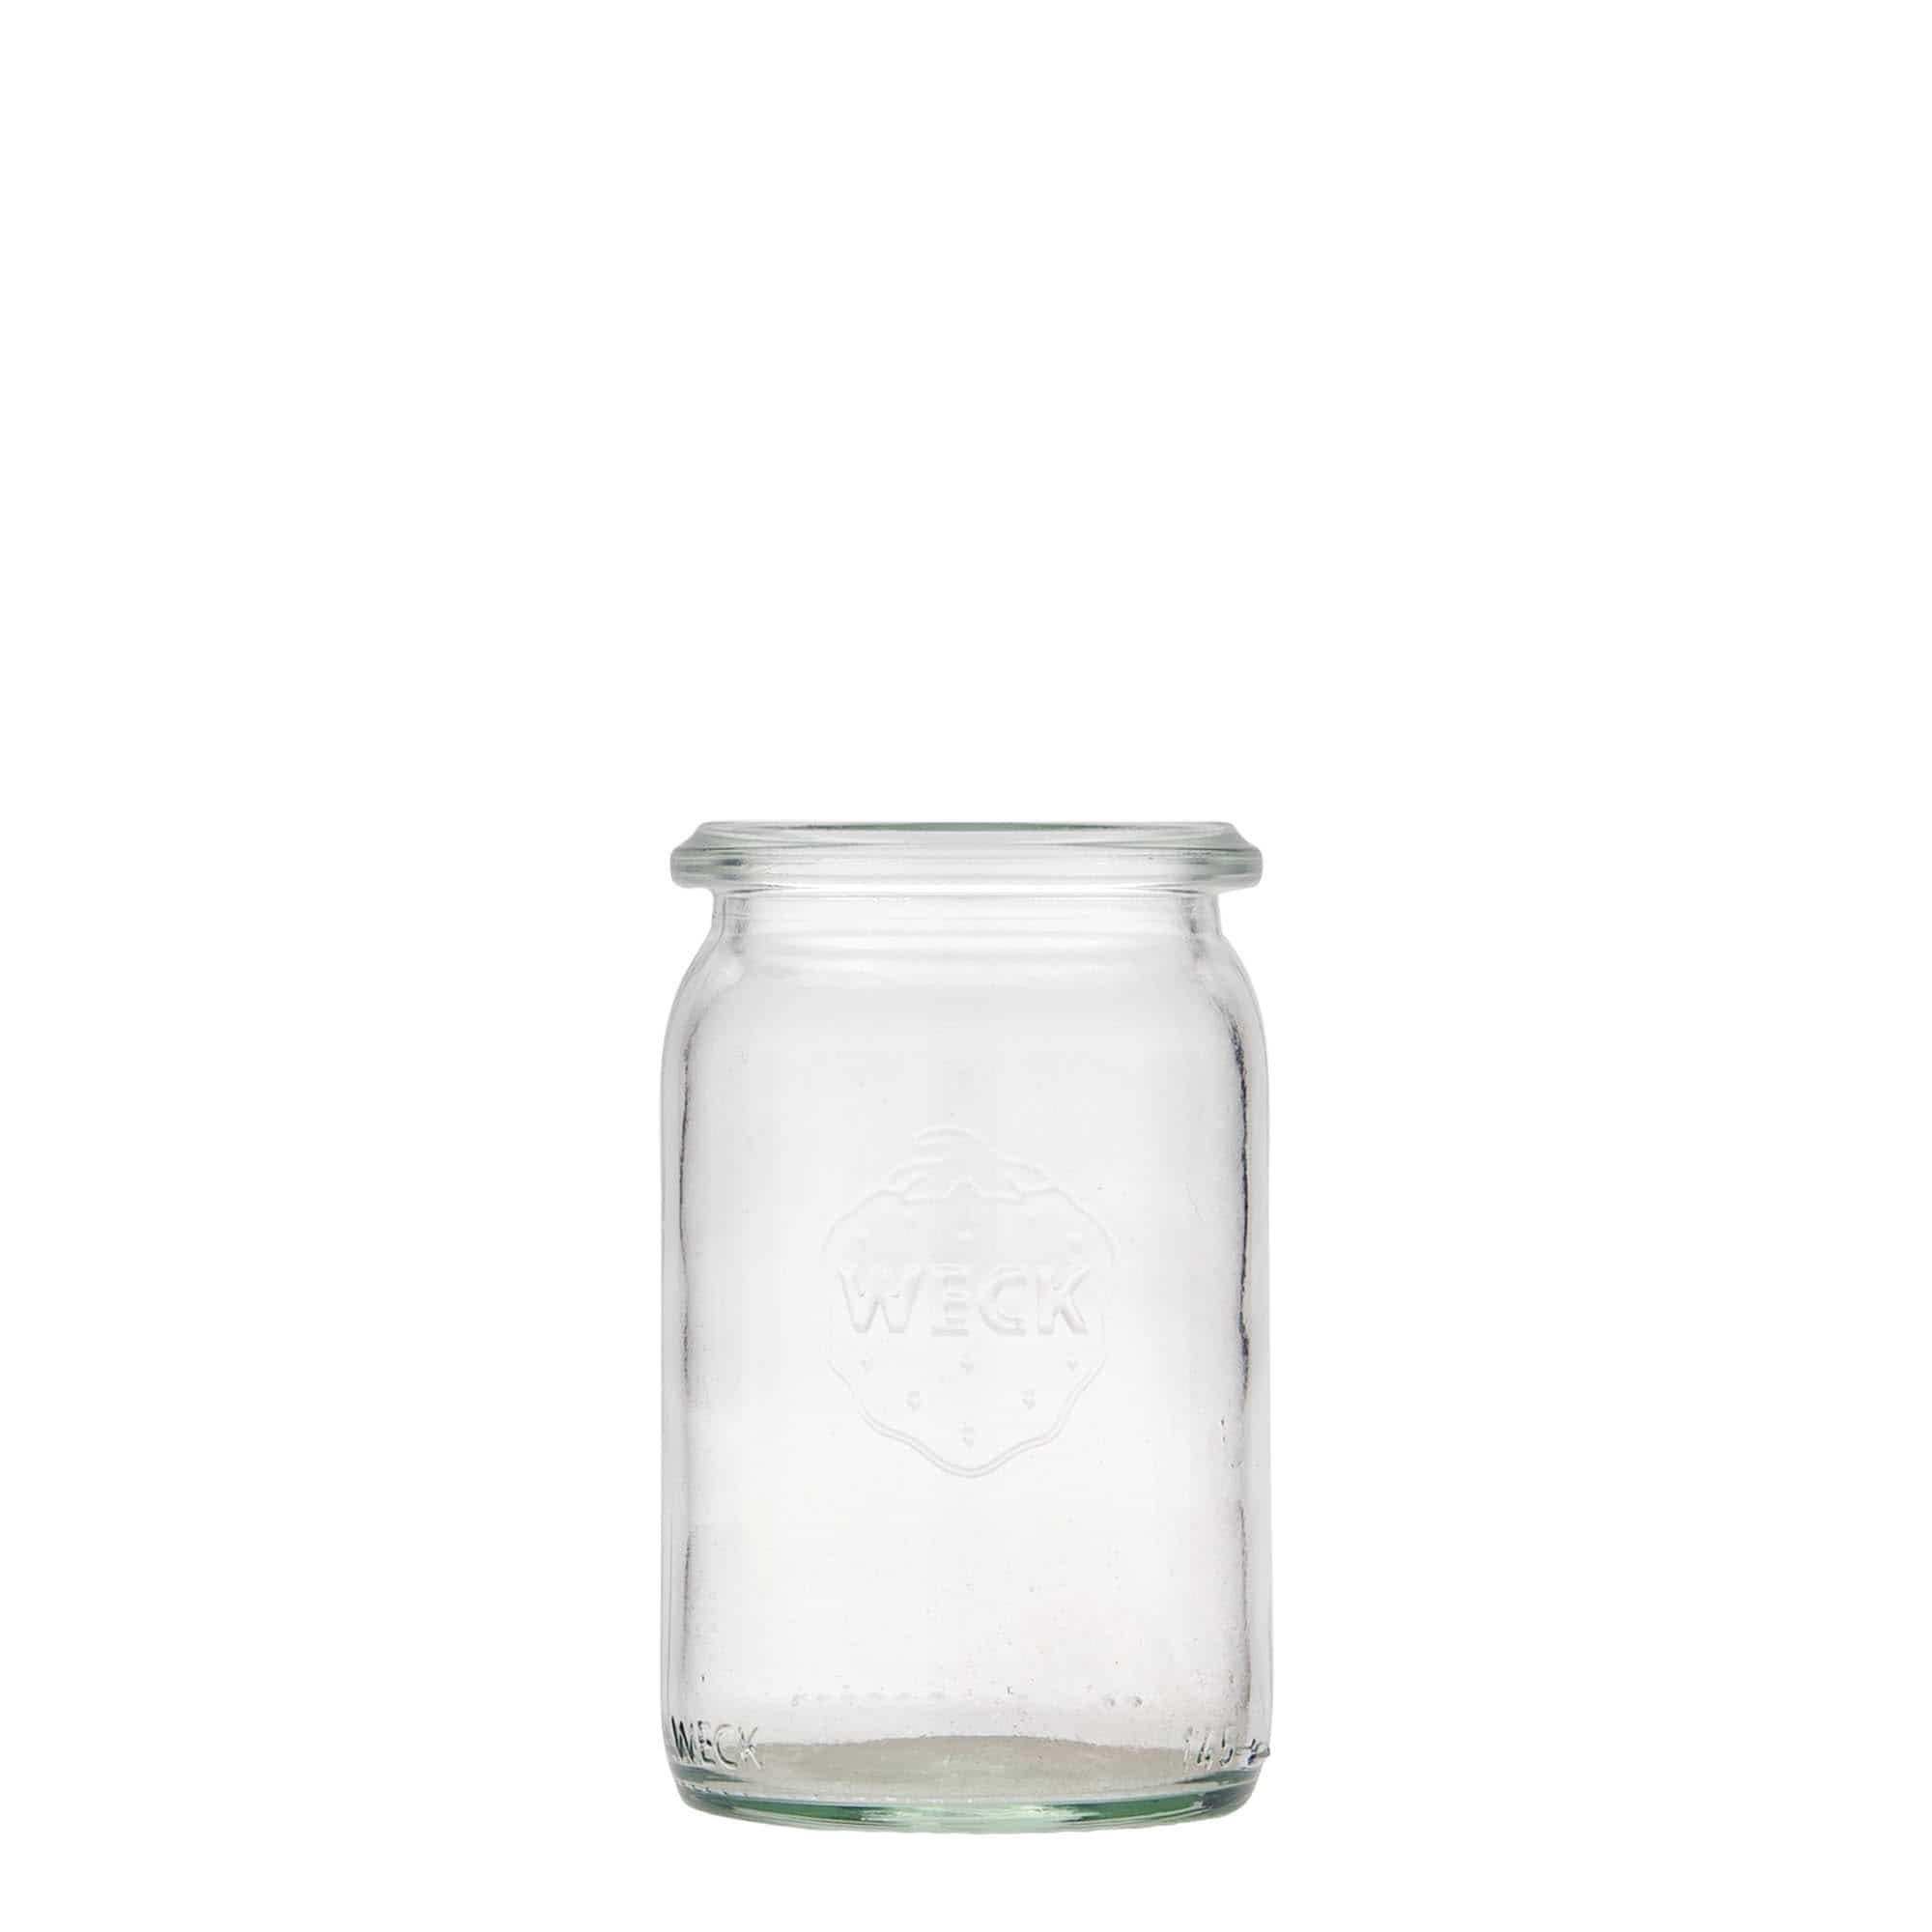 145 ml WECK tall cylinder jar, closure: round rim